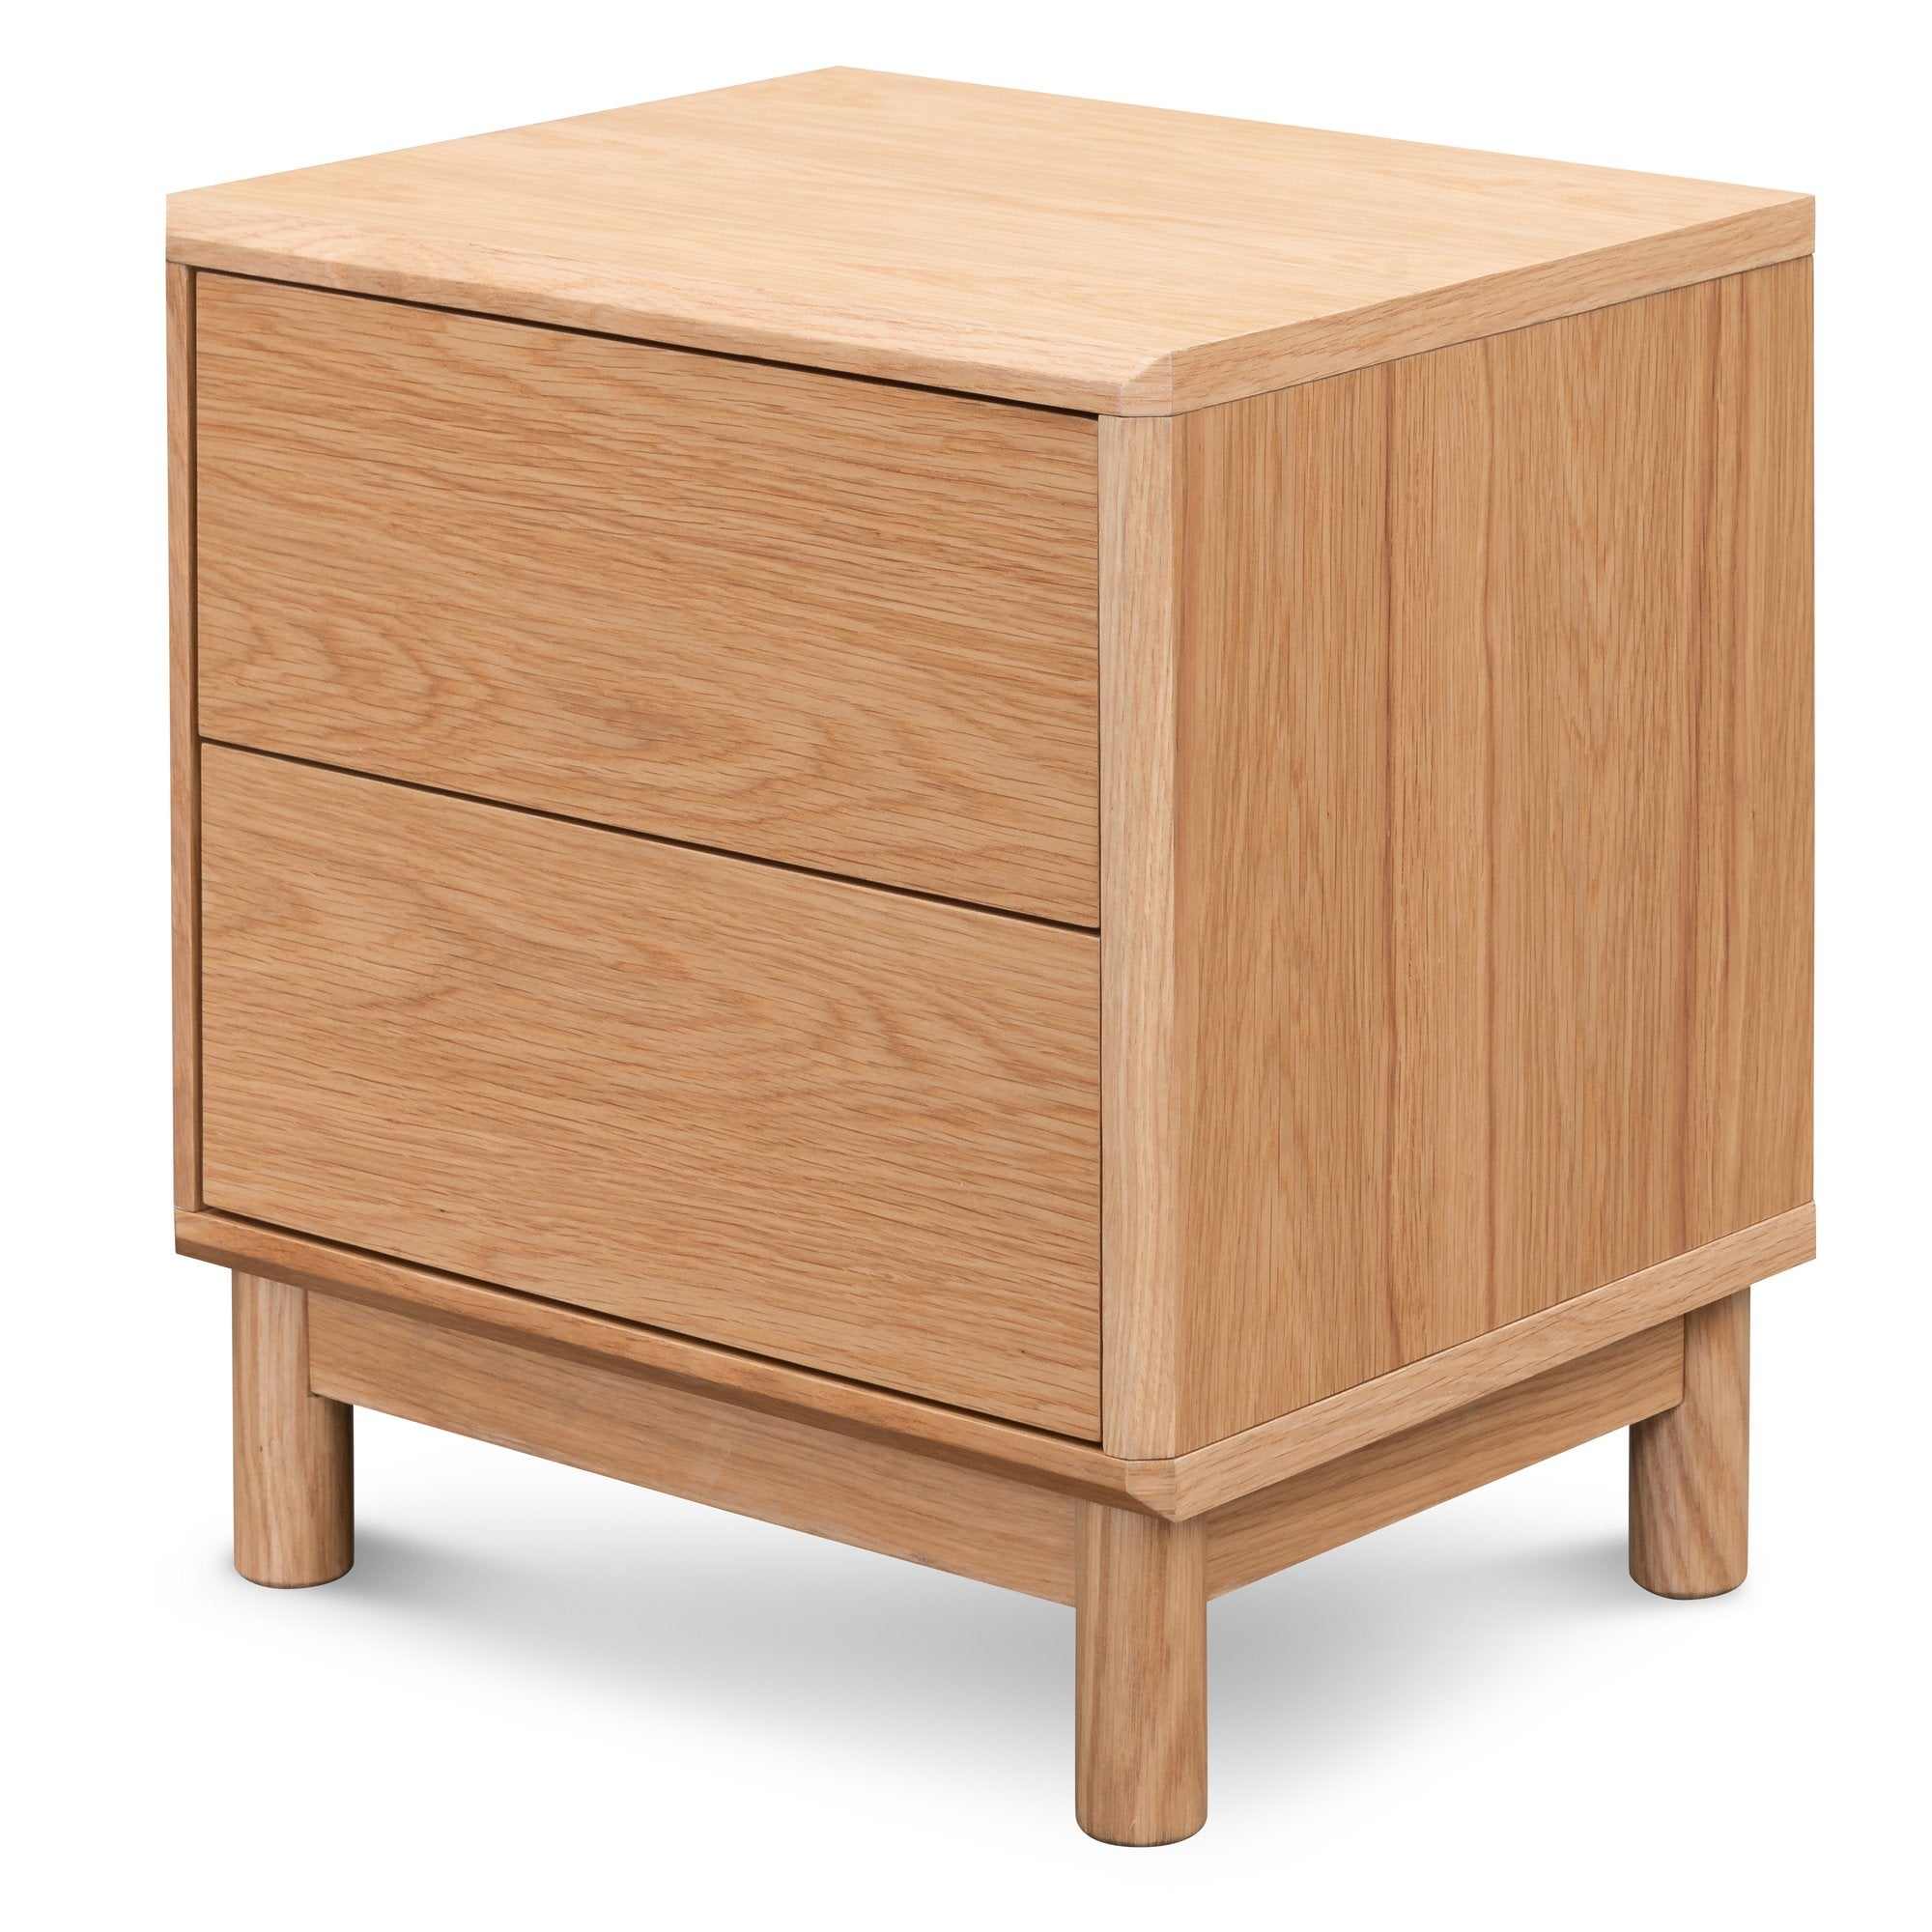 Elanor Bedside Table - Natural Oak - Bedside Tables